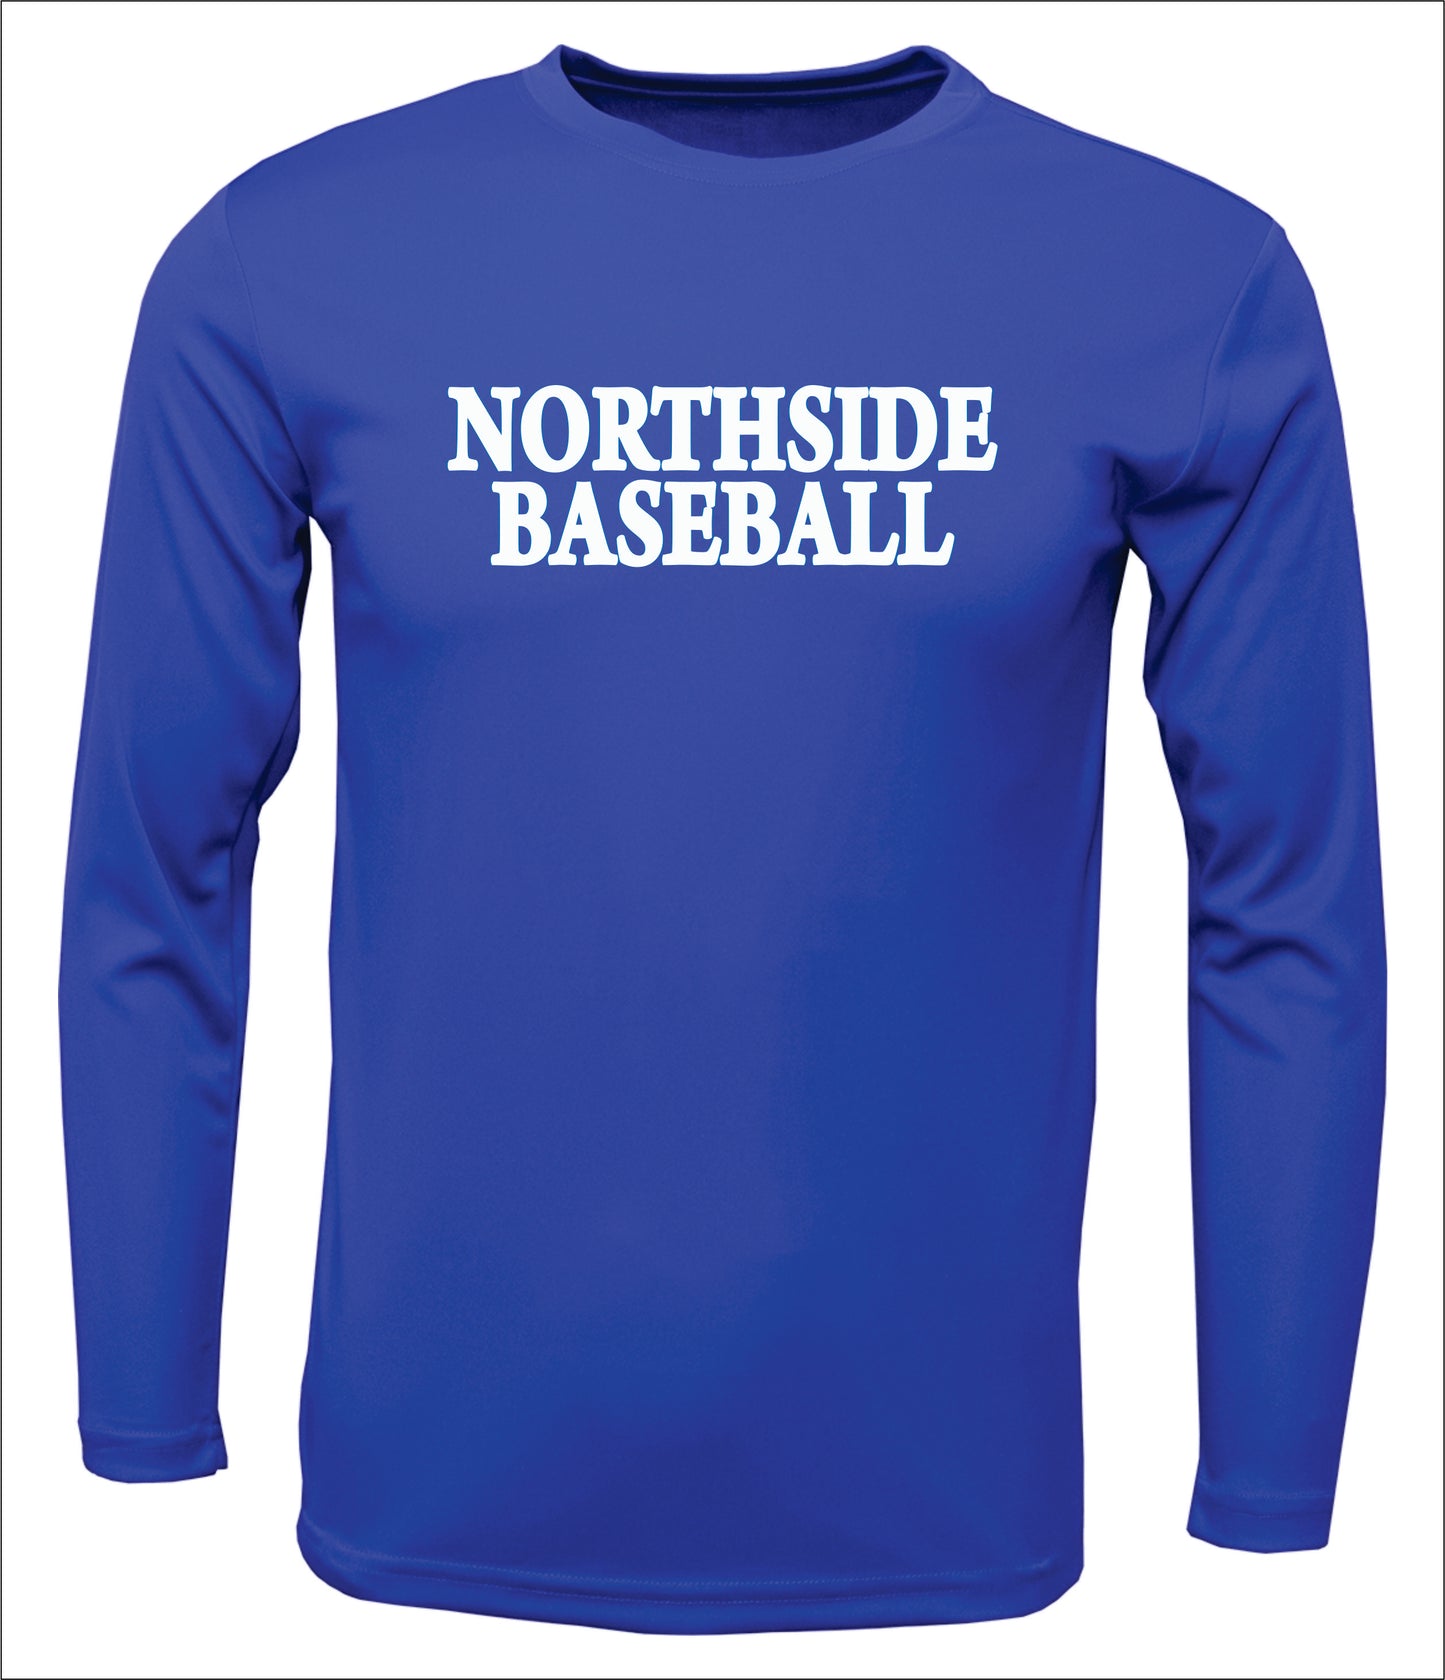 Northside Baseball Long-Sleeve Cotton T-shirt